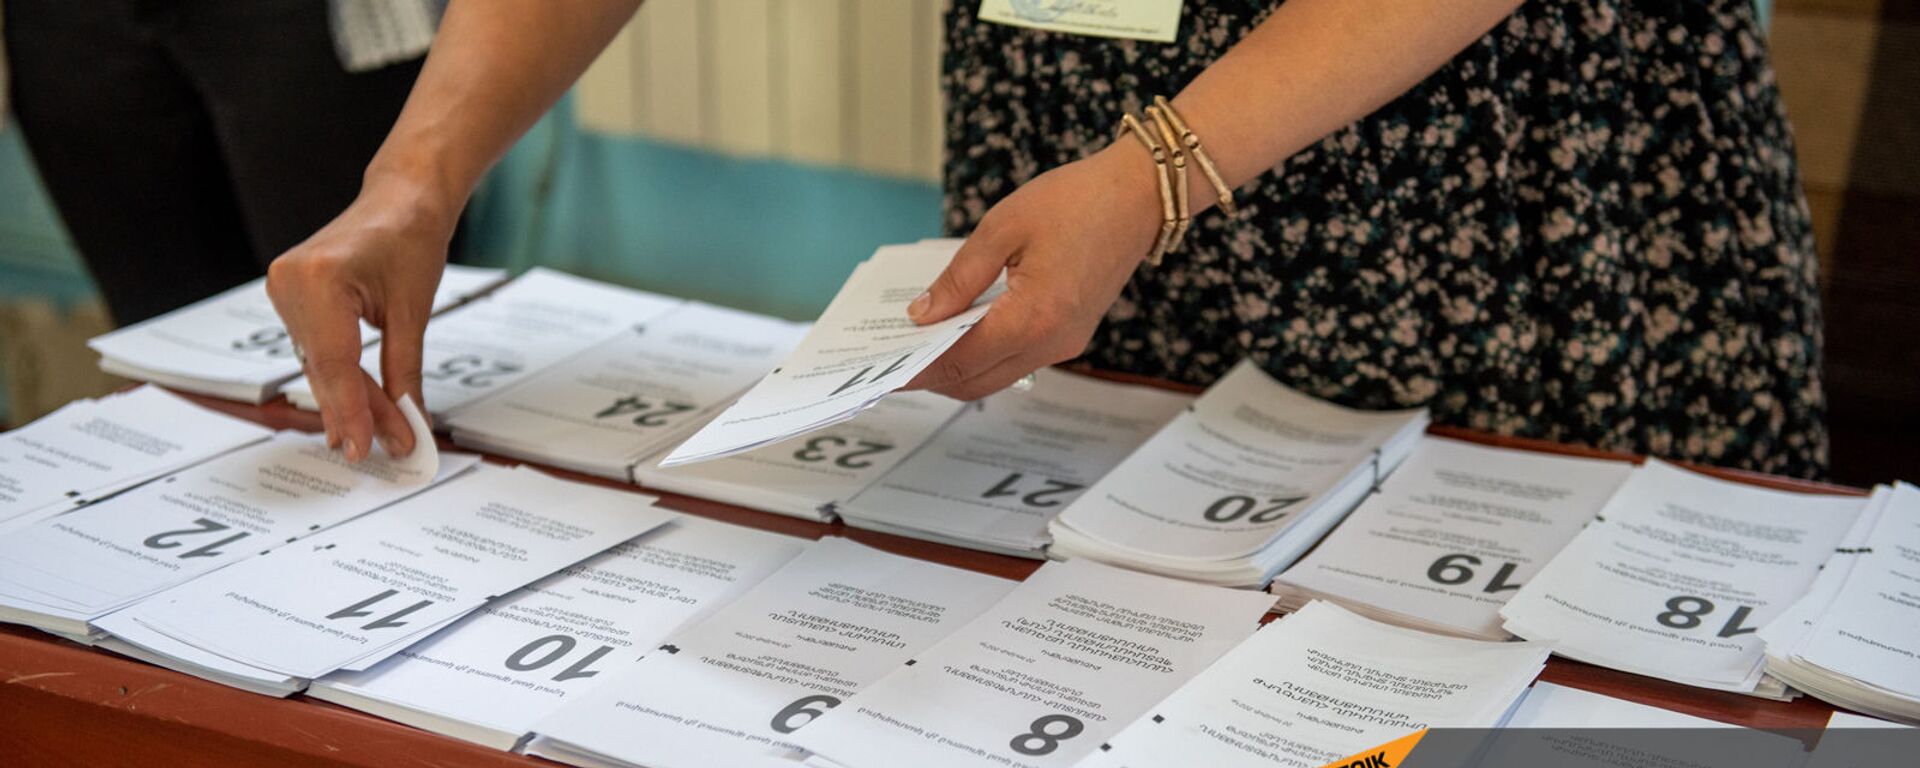 Сотрудник избирательной комиссии собирает пакет бюллетеней в избирательном участке 29/29 (20 июня 2021). Ариндж - Sputnik Армения, 1920, 20.06.2021